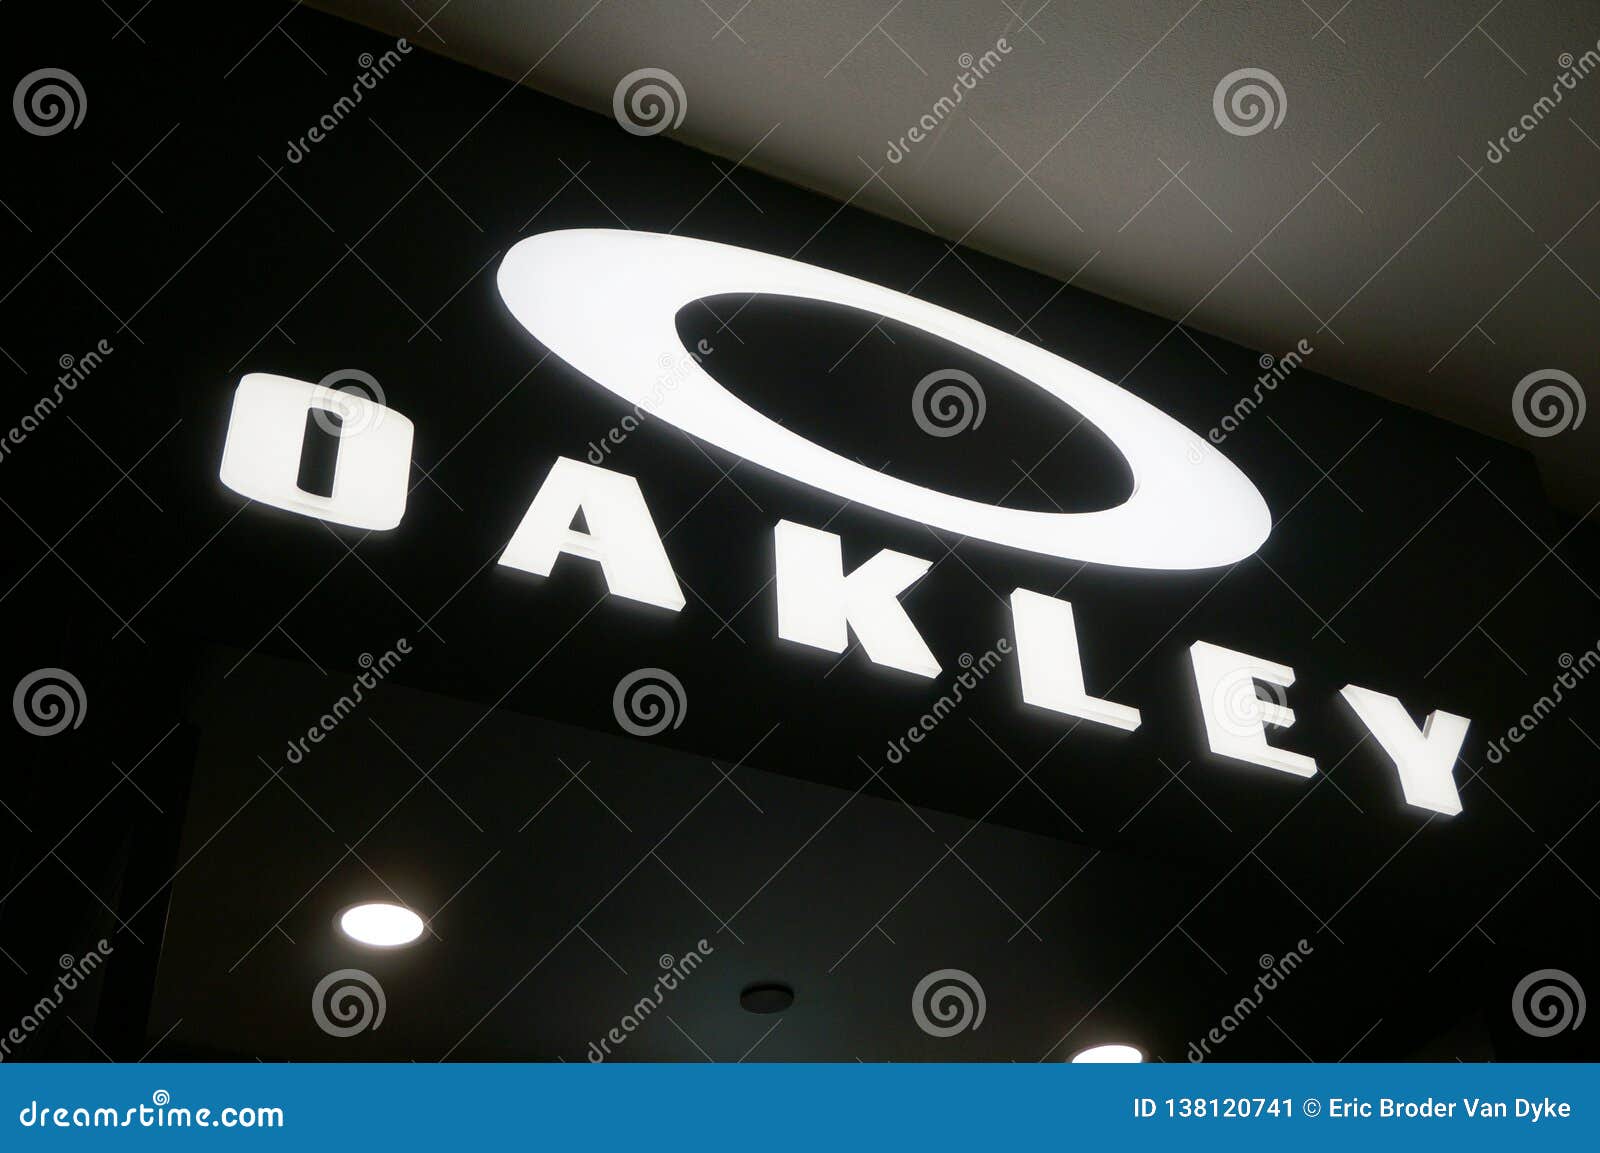 oakley sign company